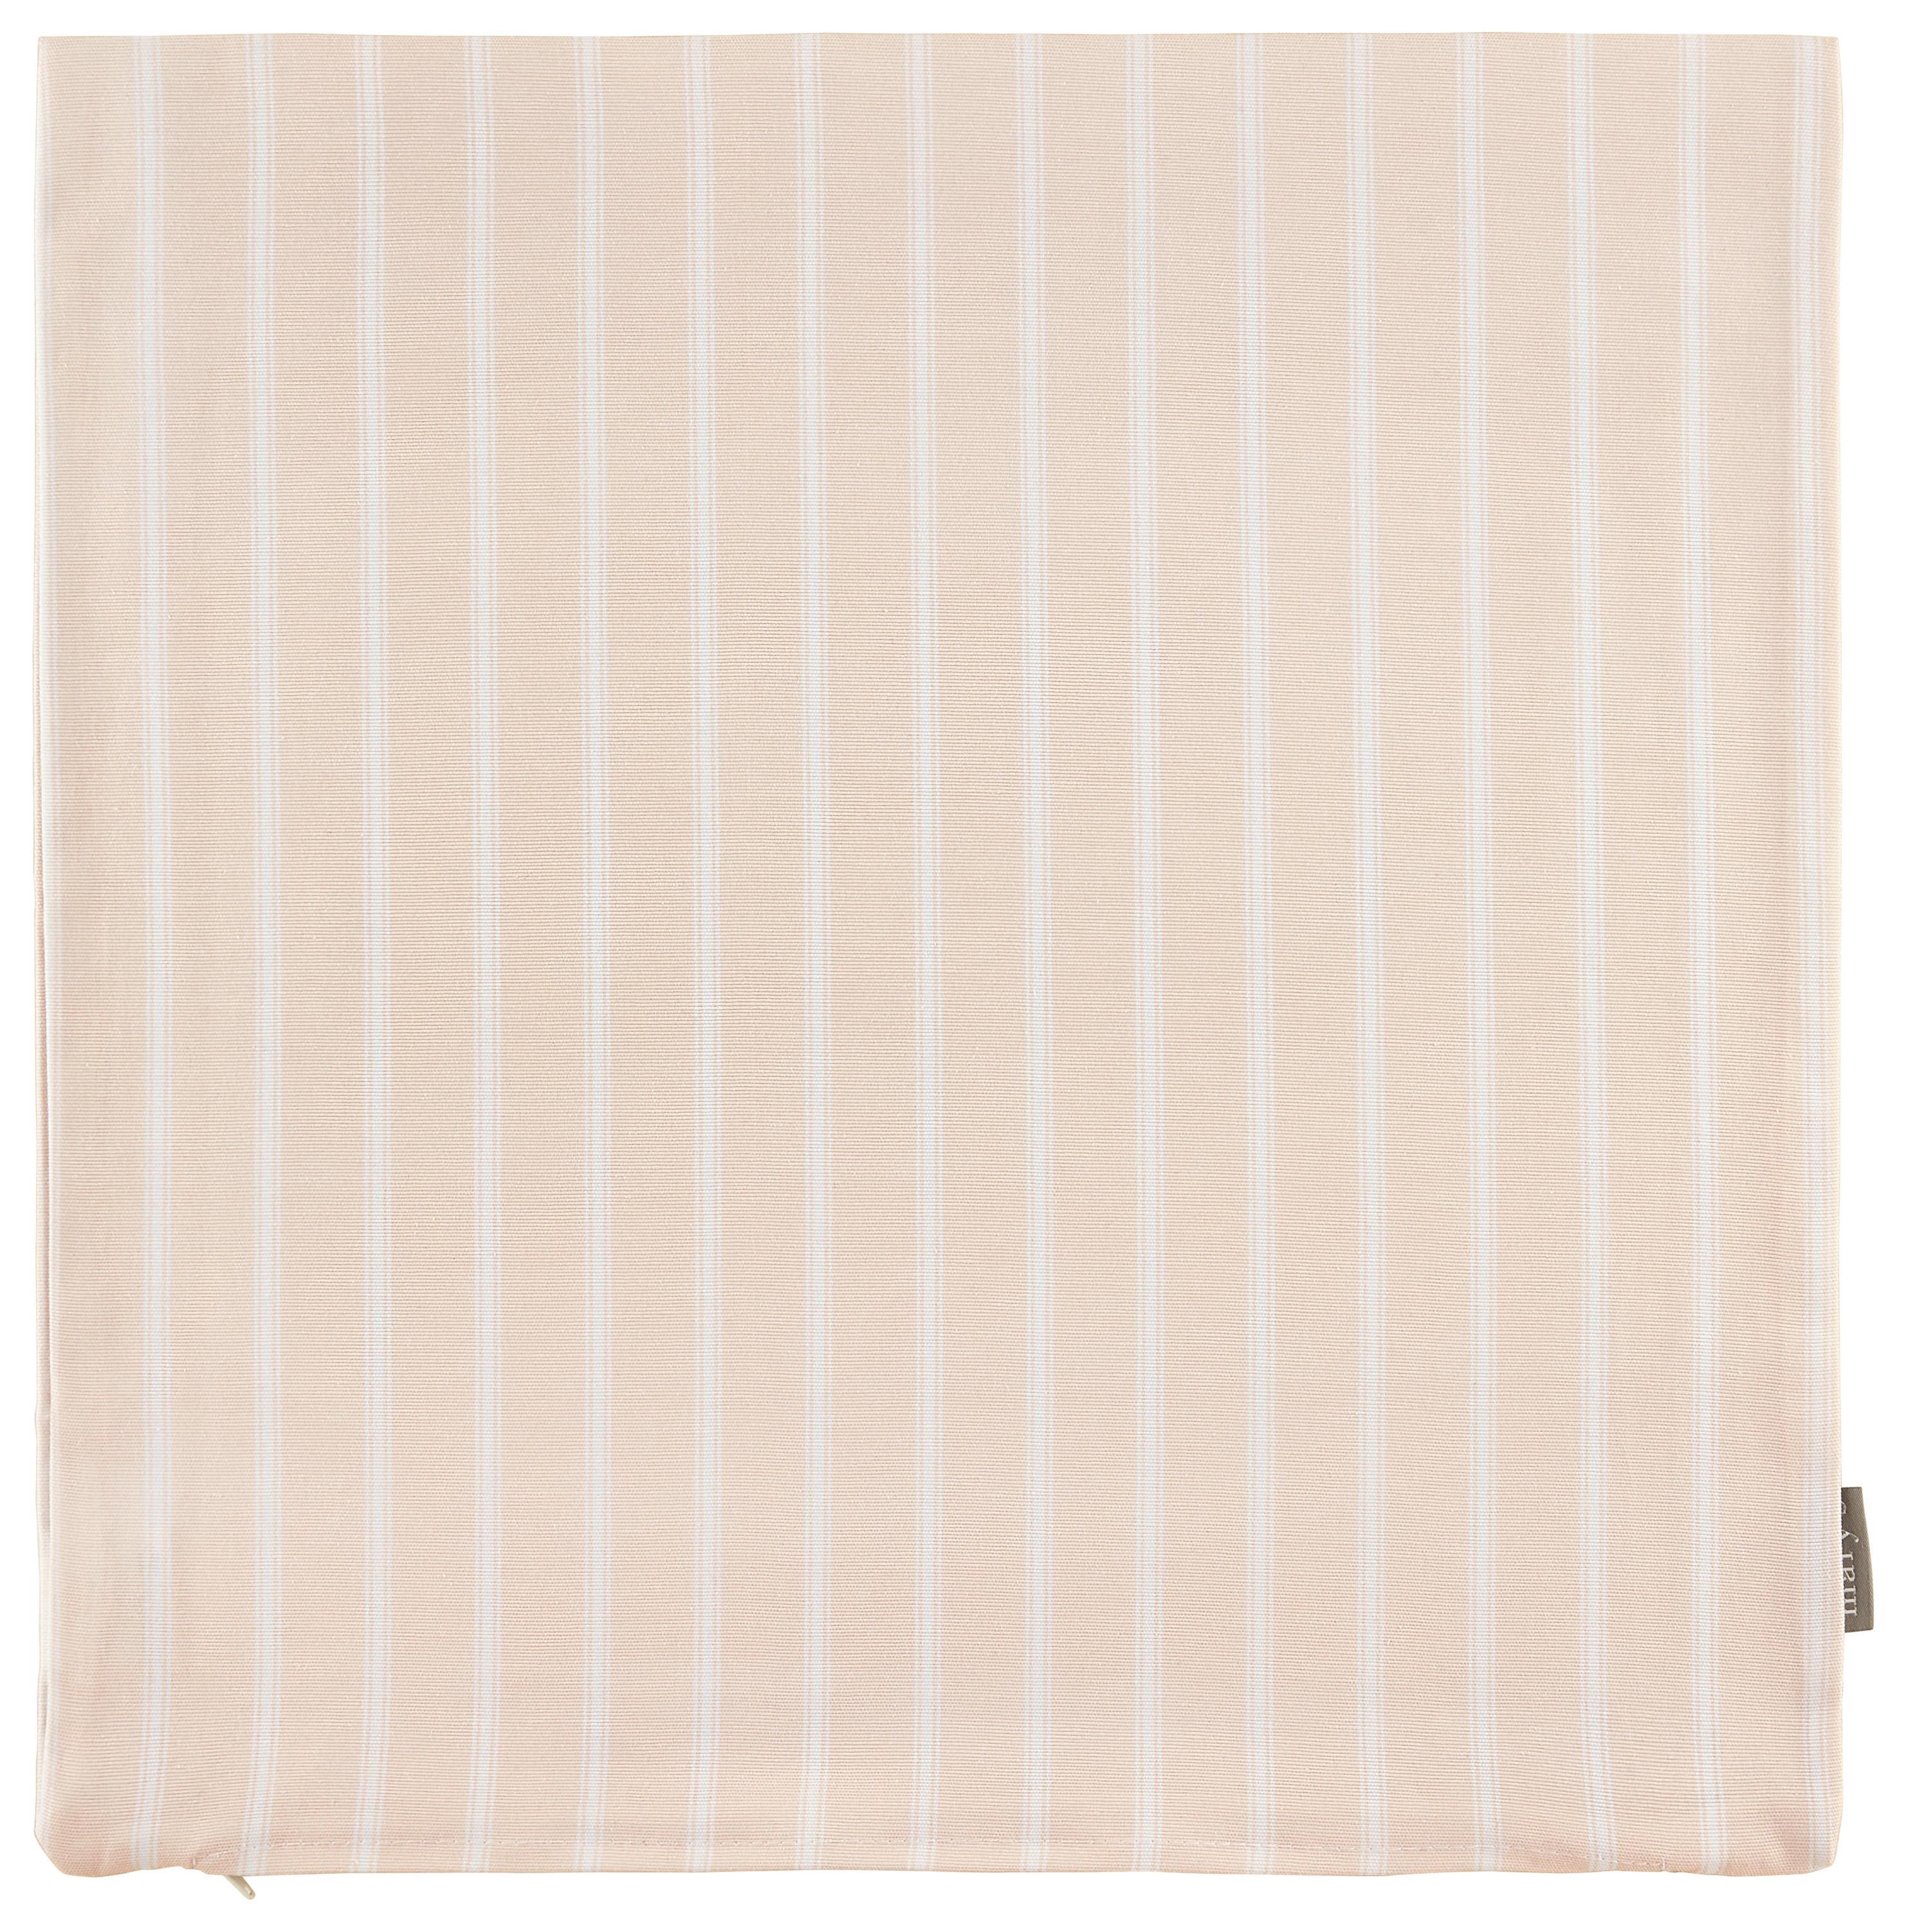 Față de pernă Steffi Paspel - alb/roz, Konventionell, textil (50/50cm) - Mary's